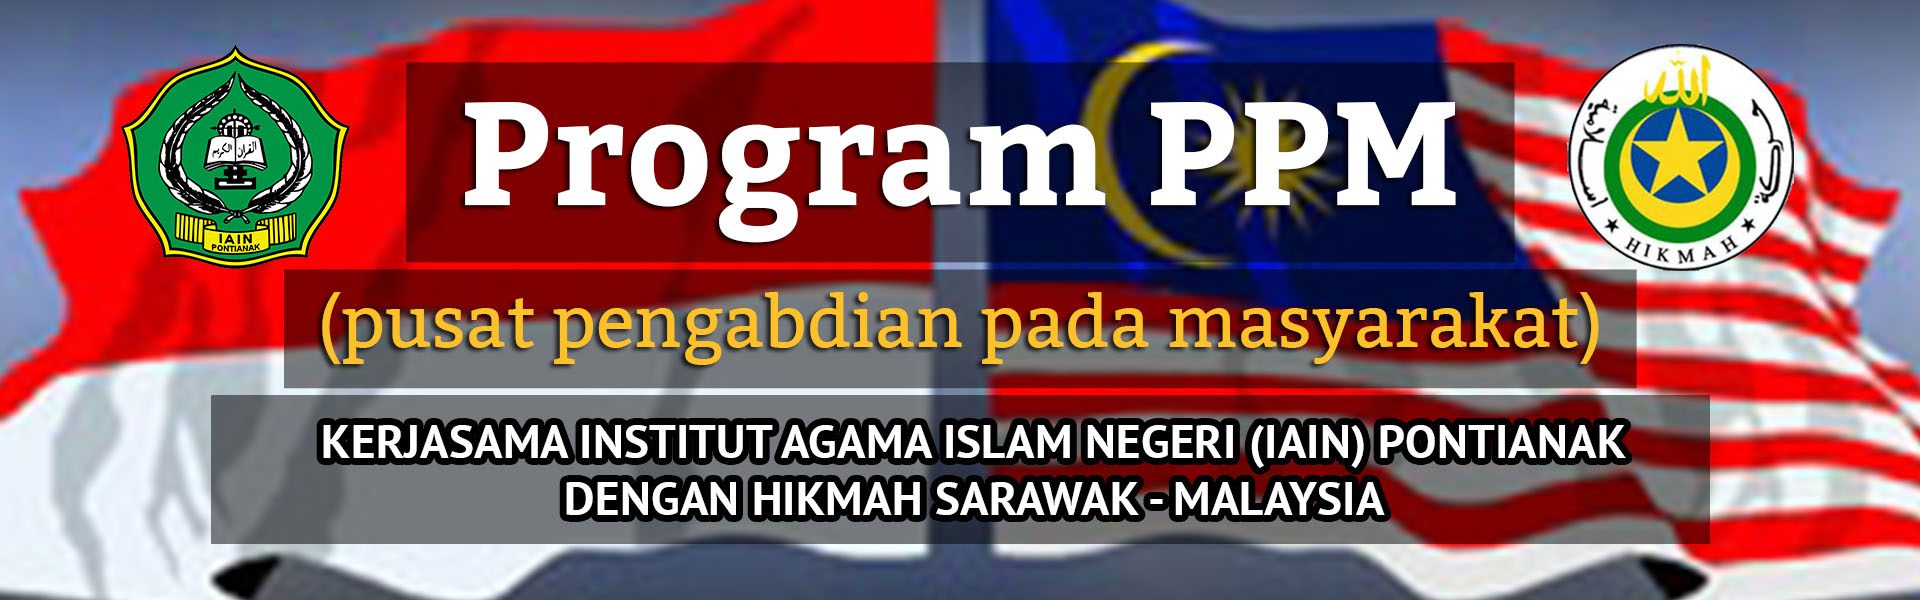 Program PPM kerjasama LP2M IAIN Pontianak dan Hikmah Sarawak – Malaysia